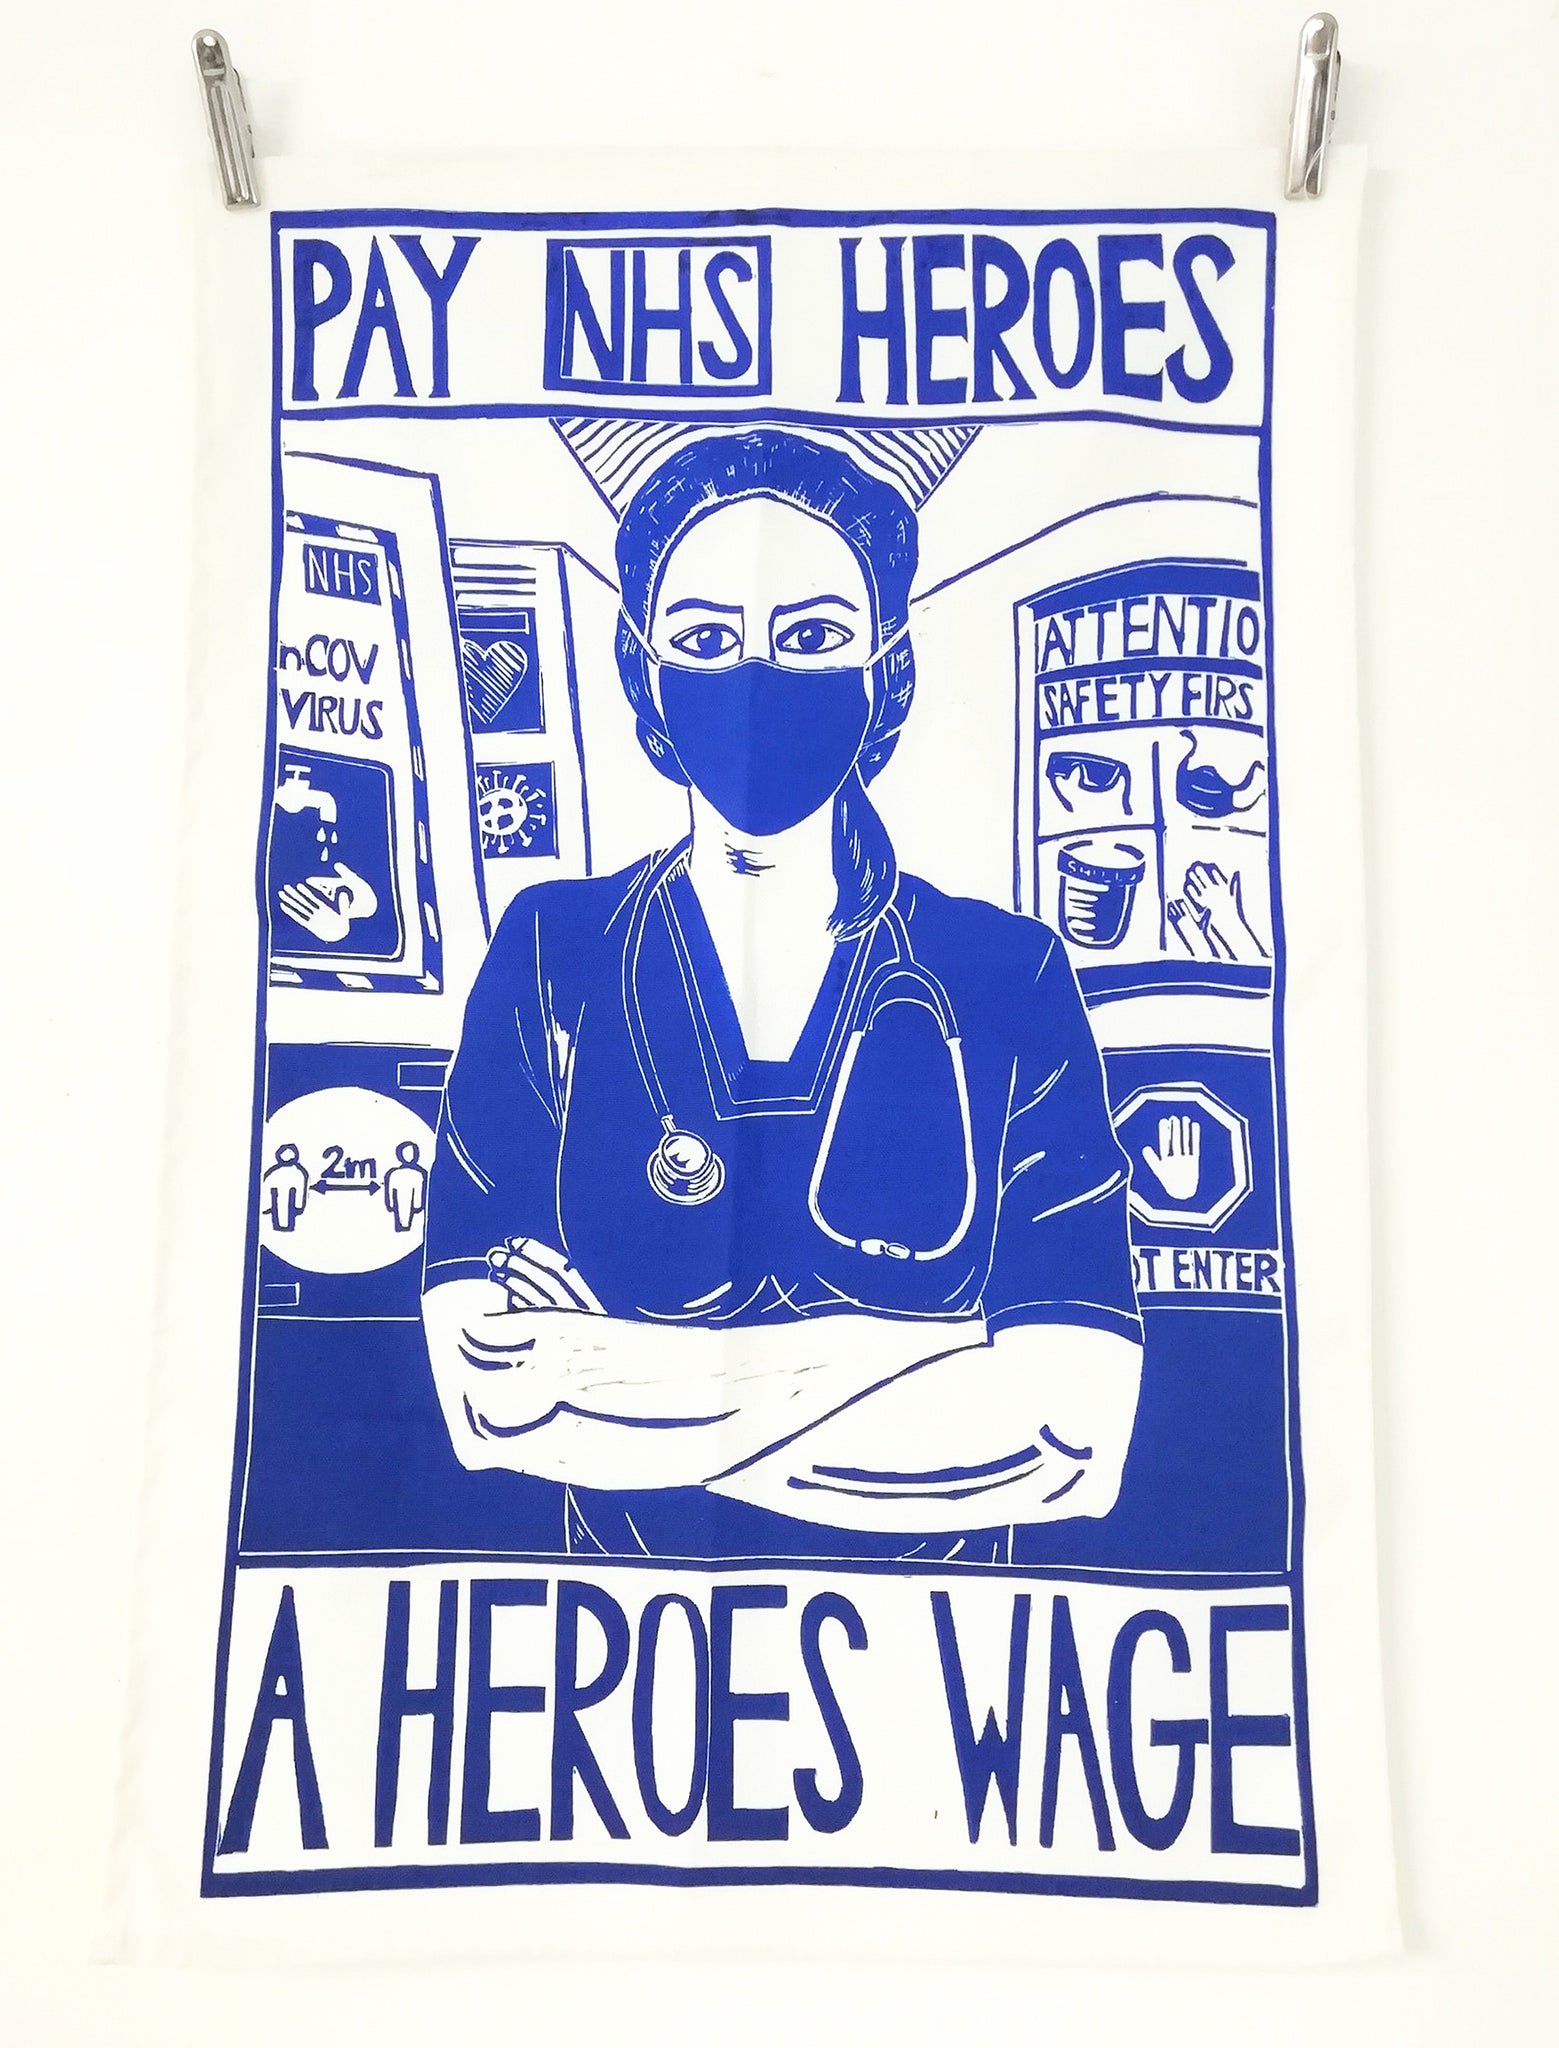 Pay NHS Heroes a Heroes Wage tea towel